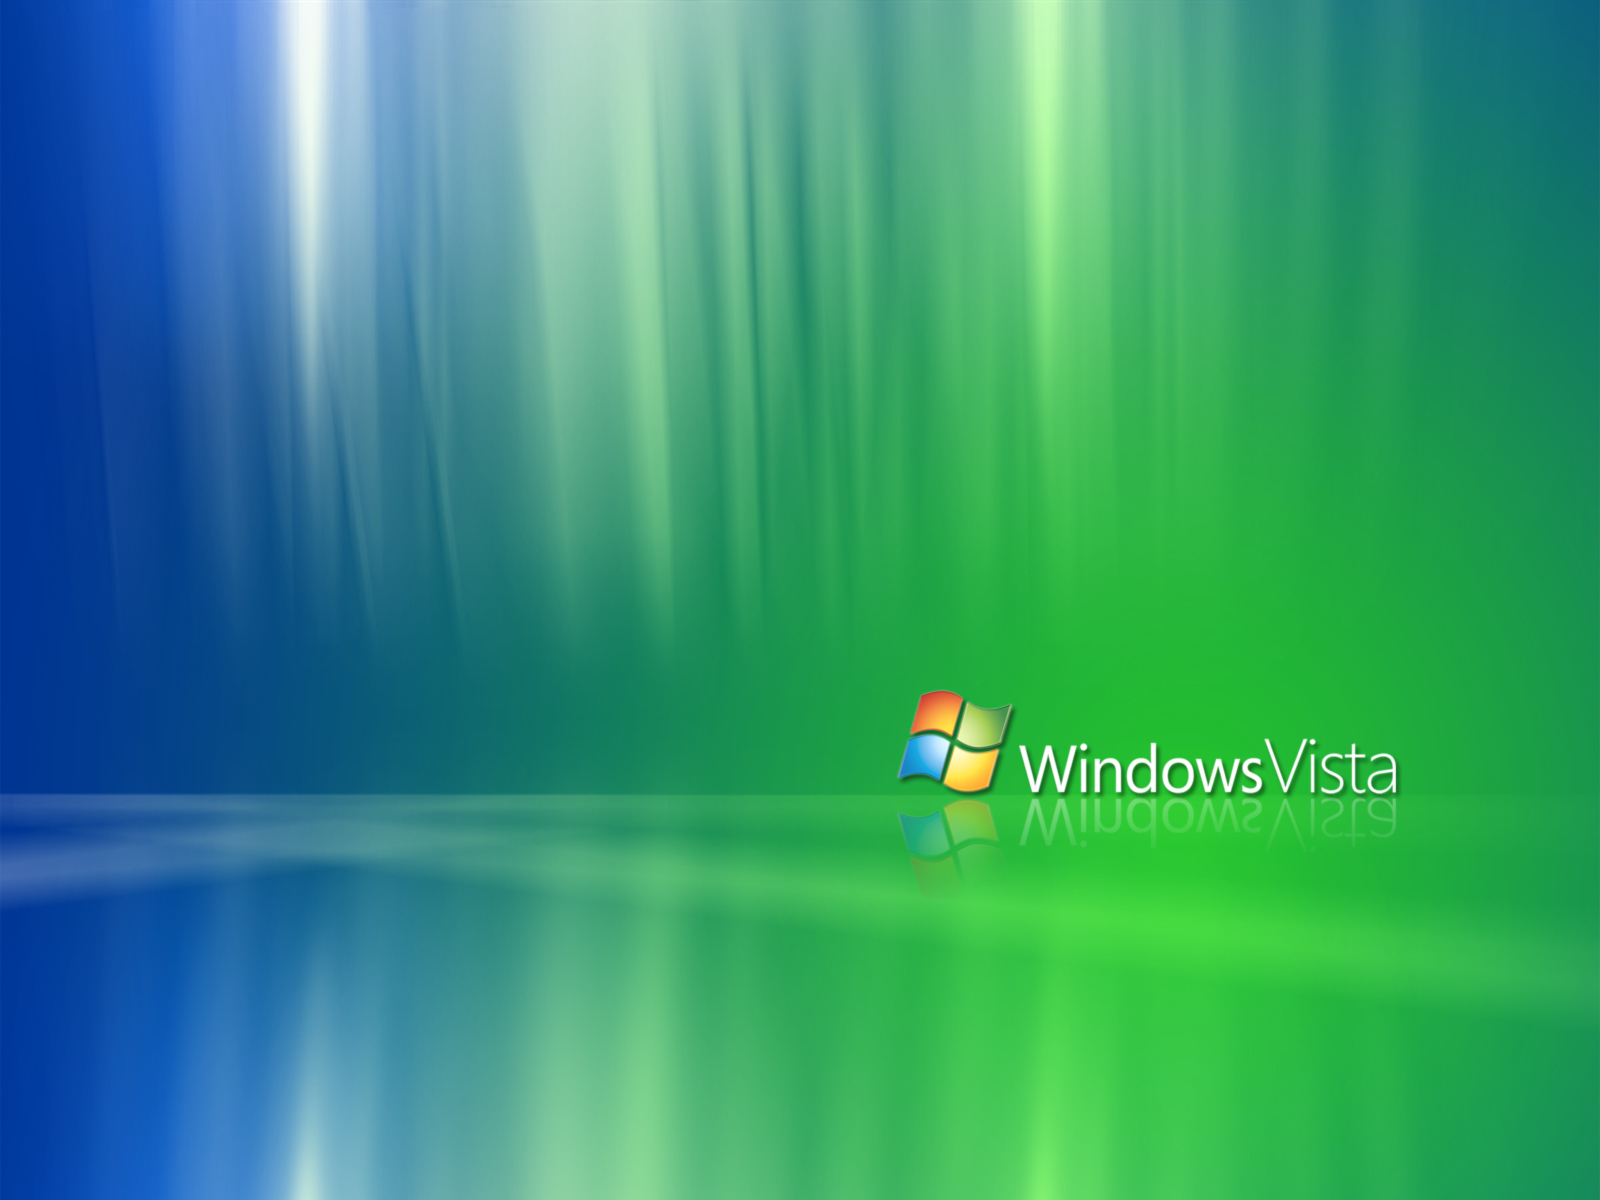 sfondo di windows vista,verde,blu,sistema operativo,animazione,cielo